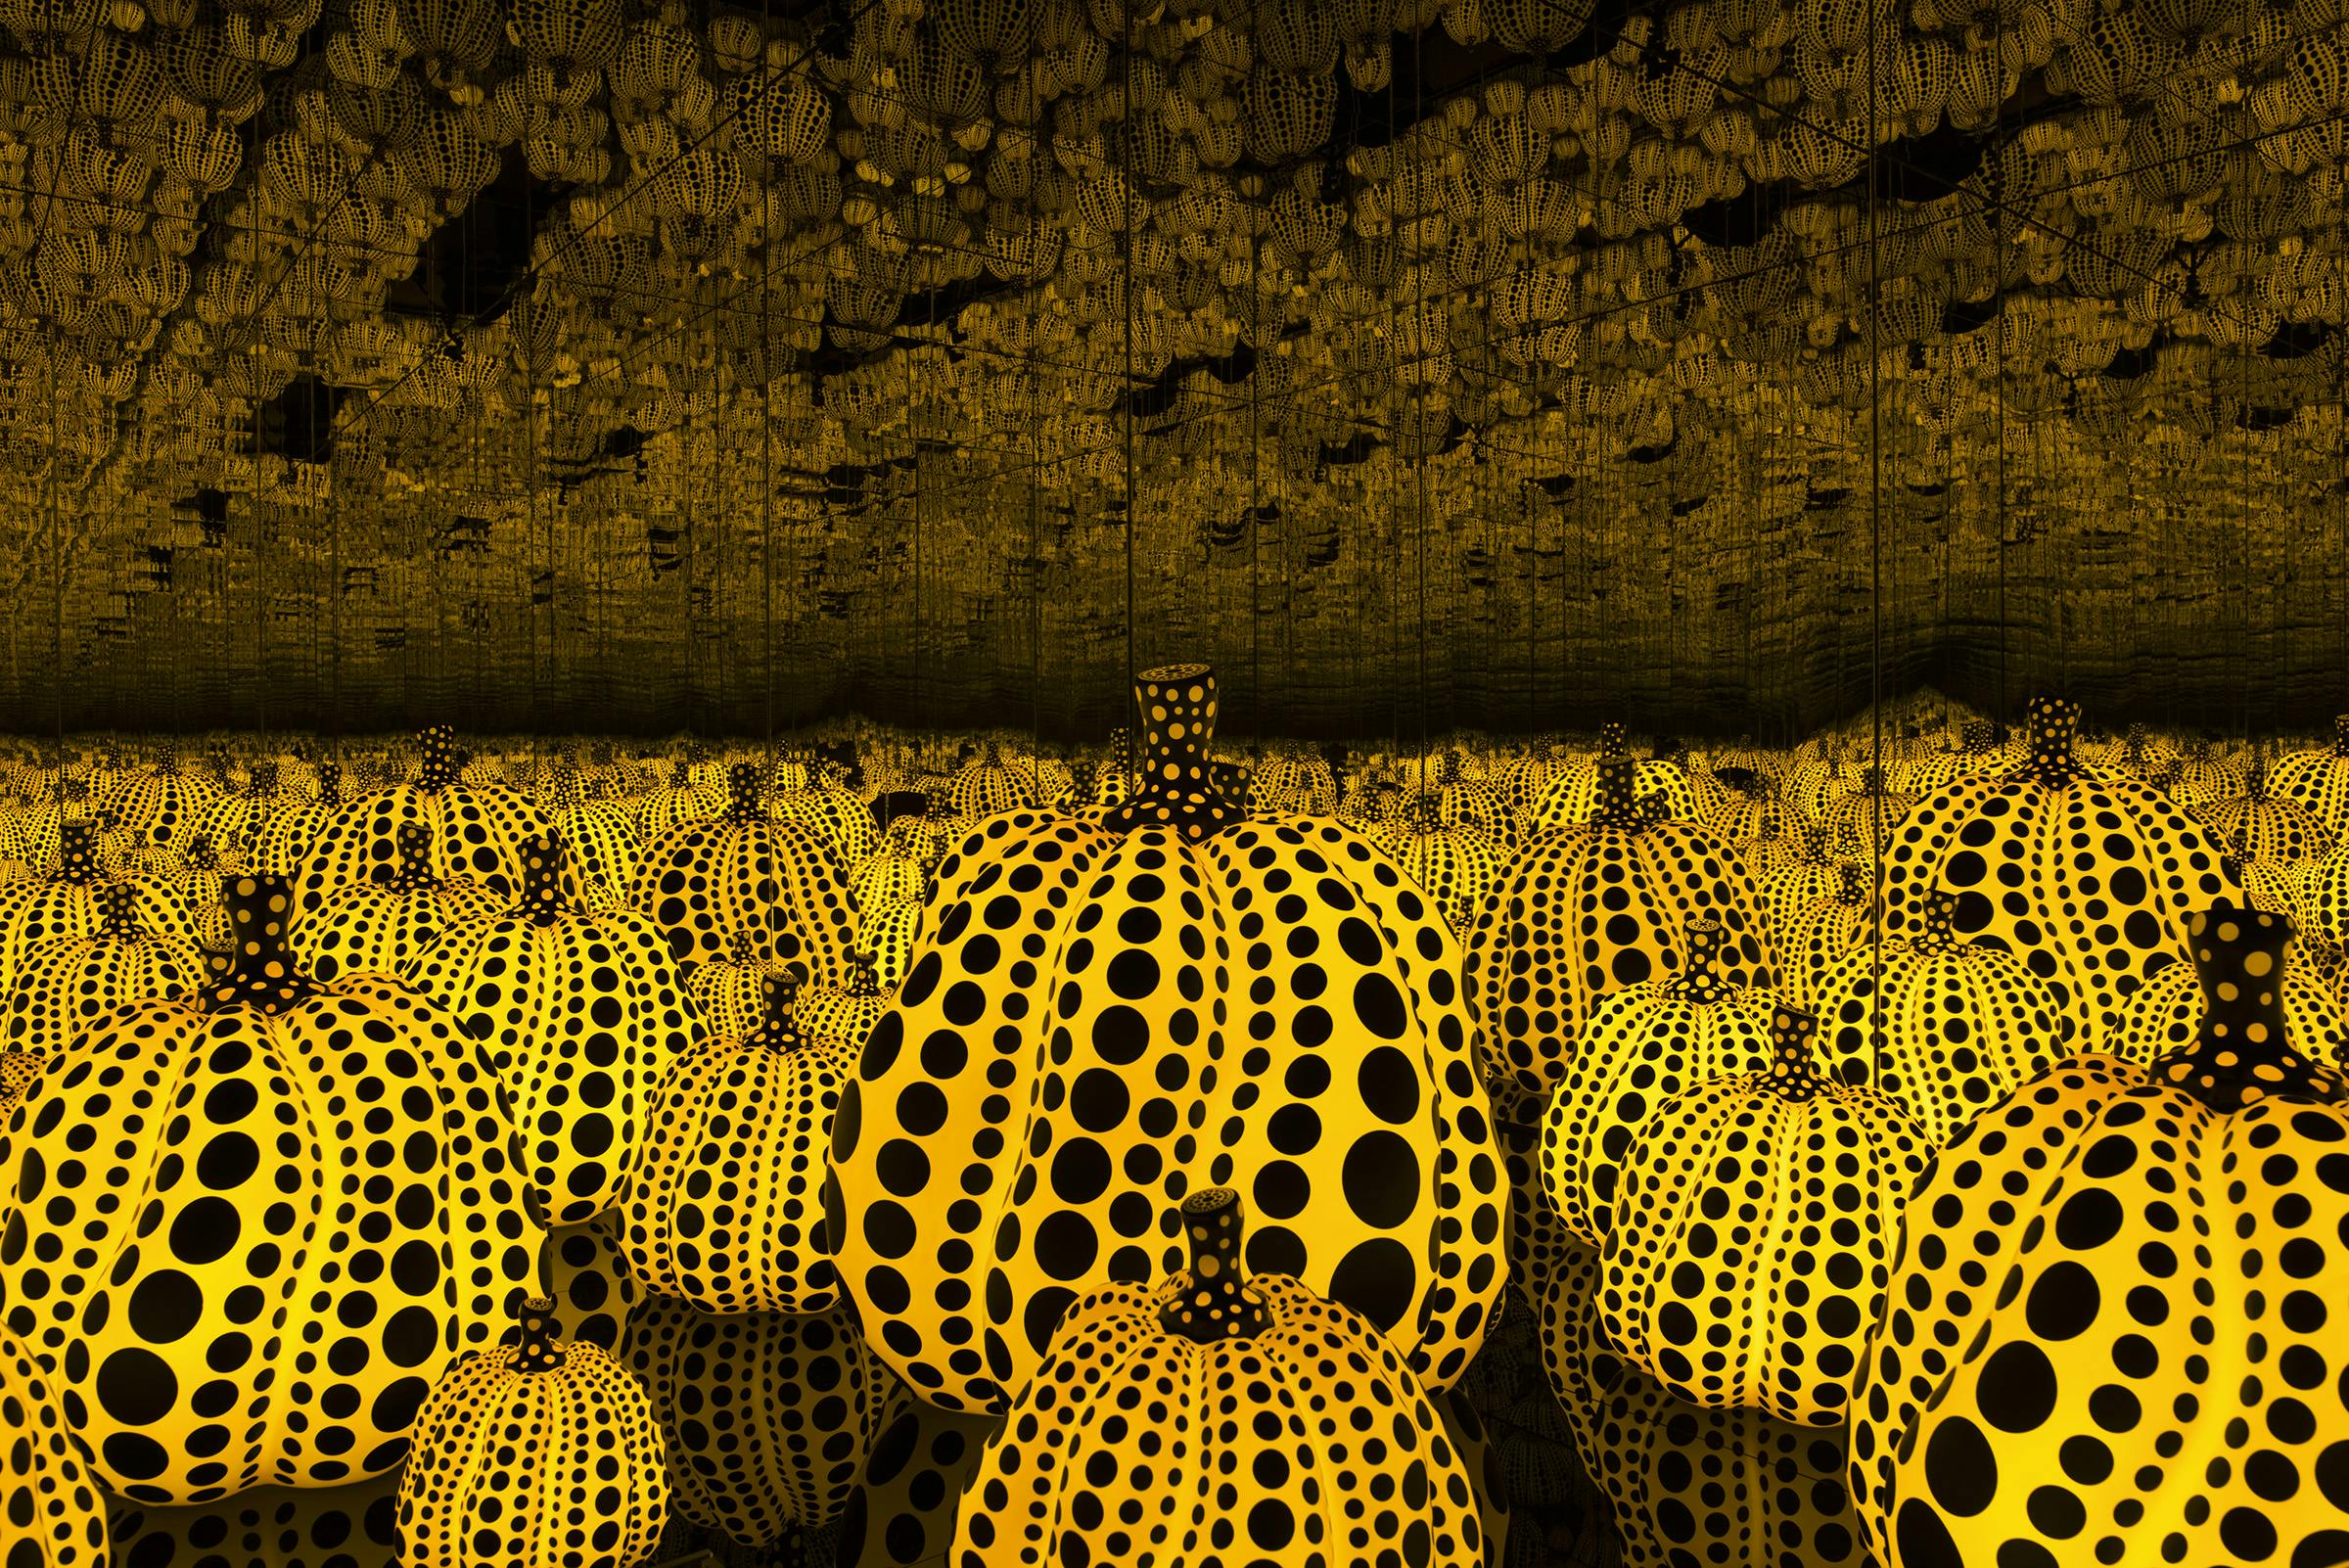 Kusama pumpkins black dots on yellow